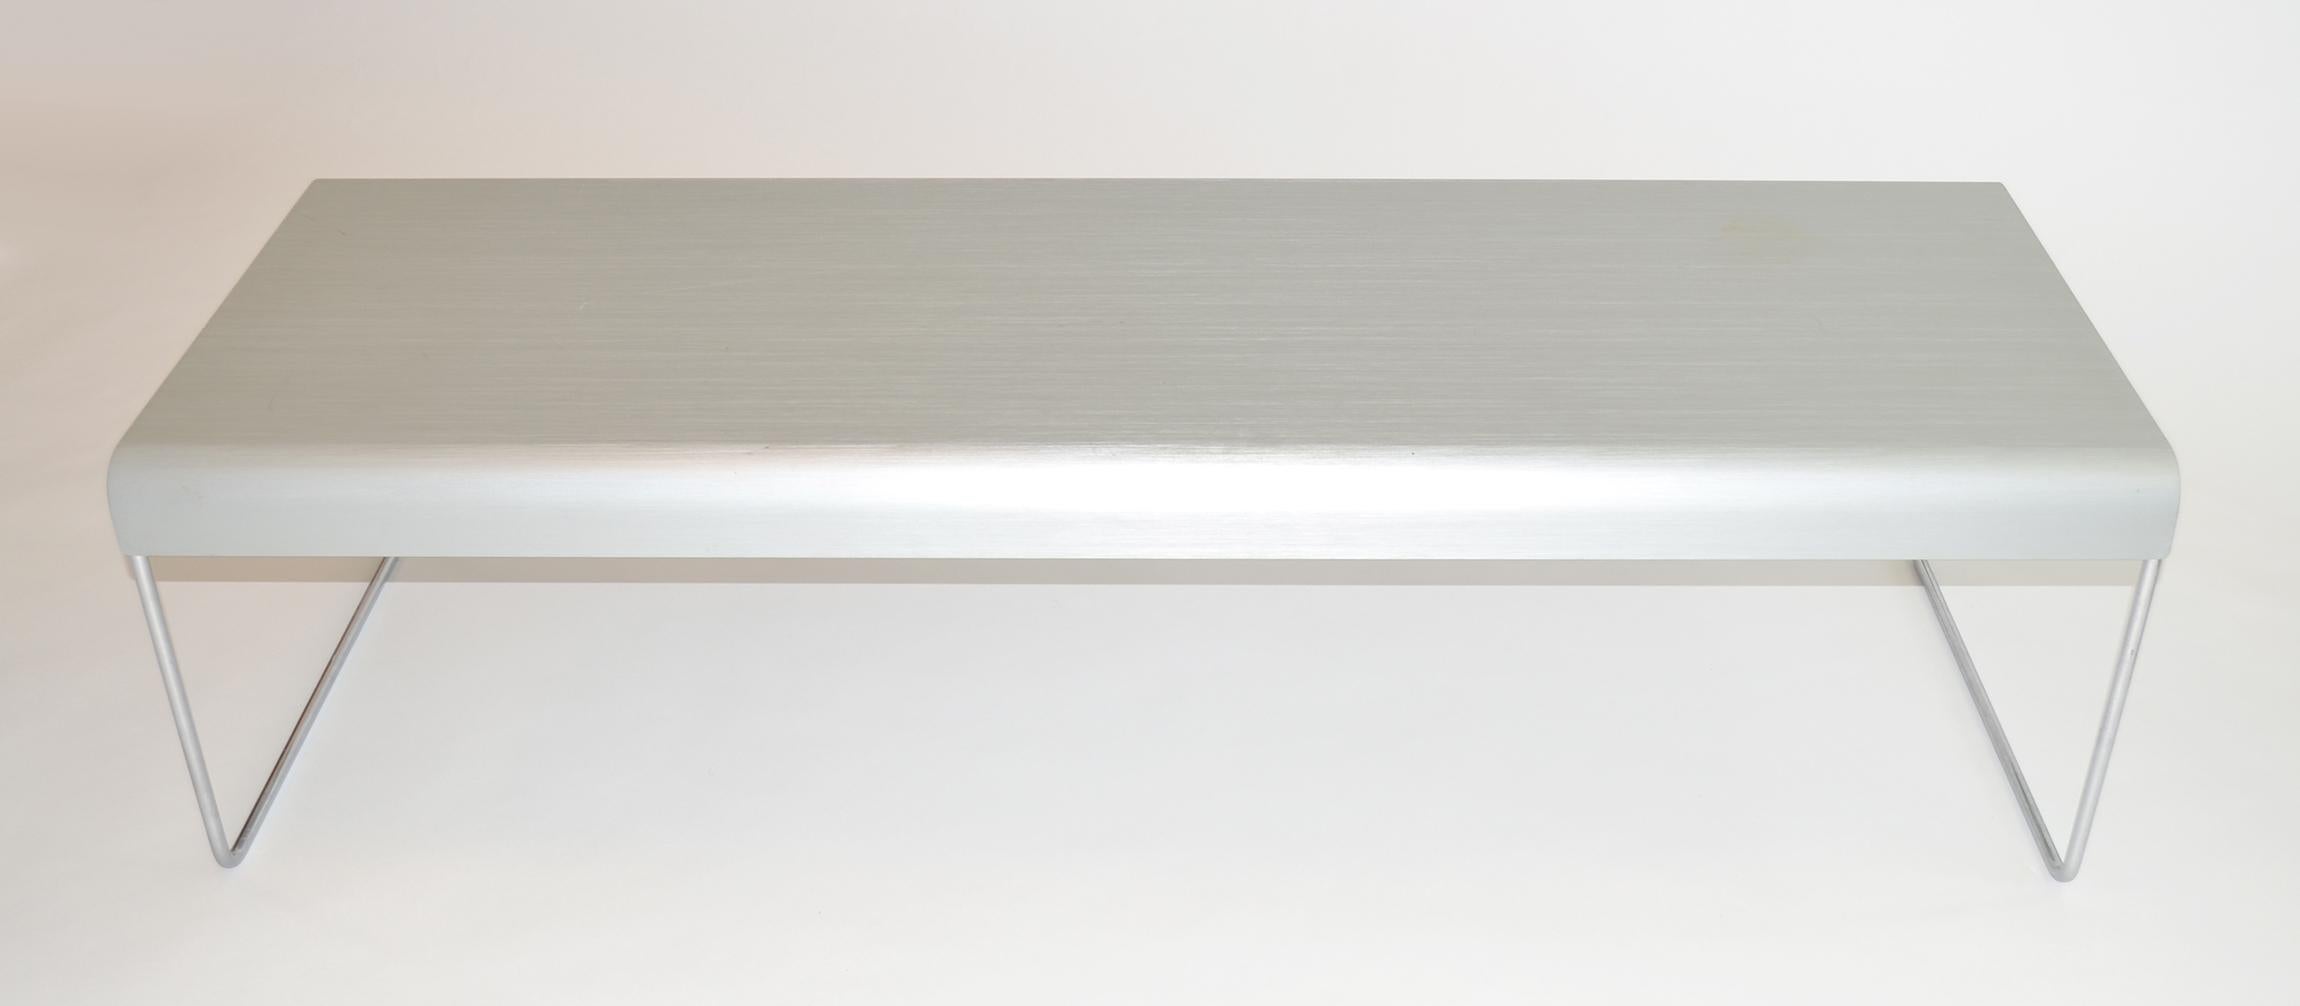 Piero Lissoni for Cassina aluminum zap 254 coffee table:: Waterfall Design italien minimaliste:: aluminium et acier chromé. Peut être utilisée comme table basse ou d'appoint:: ou comme banc de chevet:: dans les années 1990. 
Usure de la finition